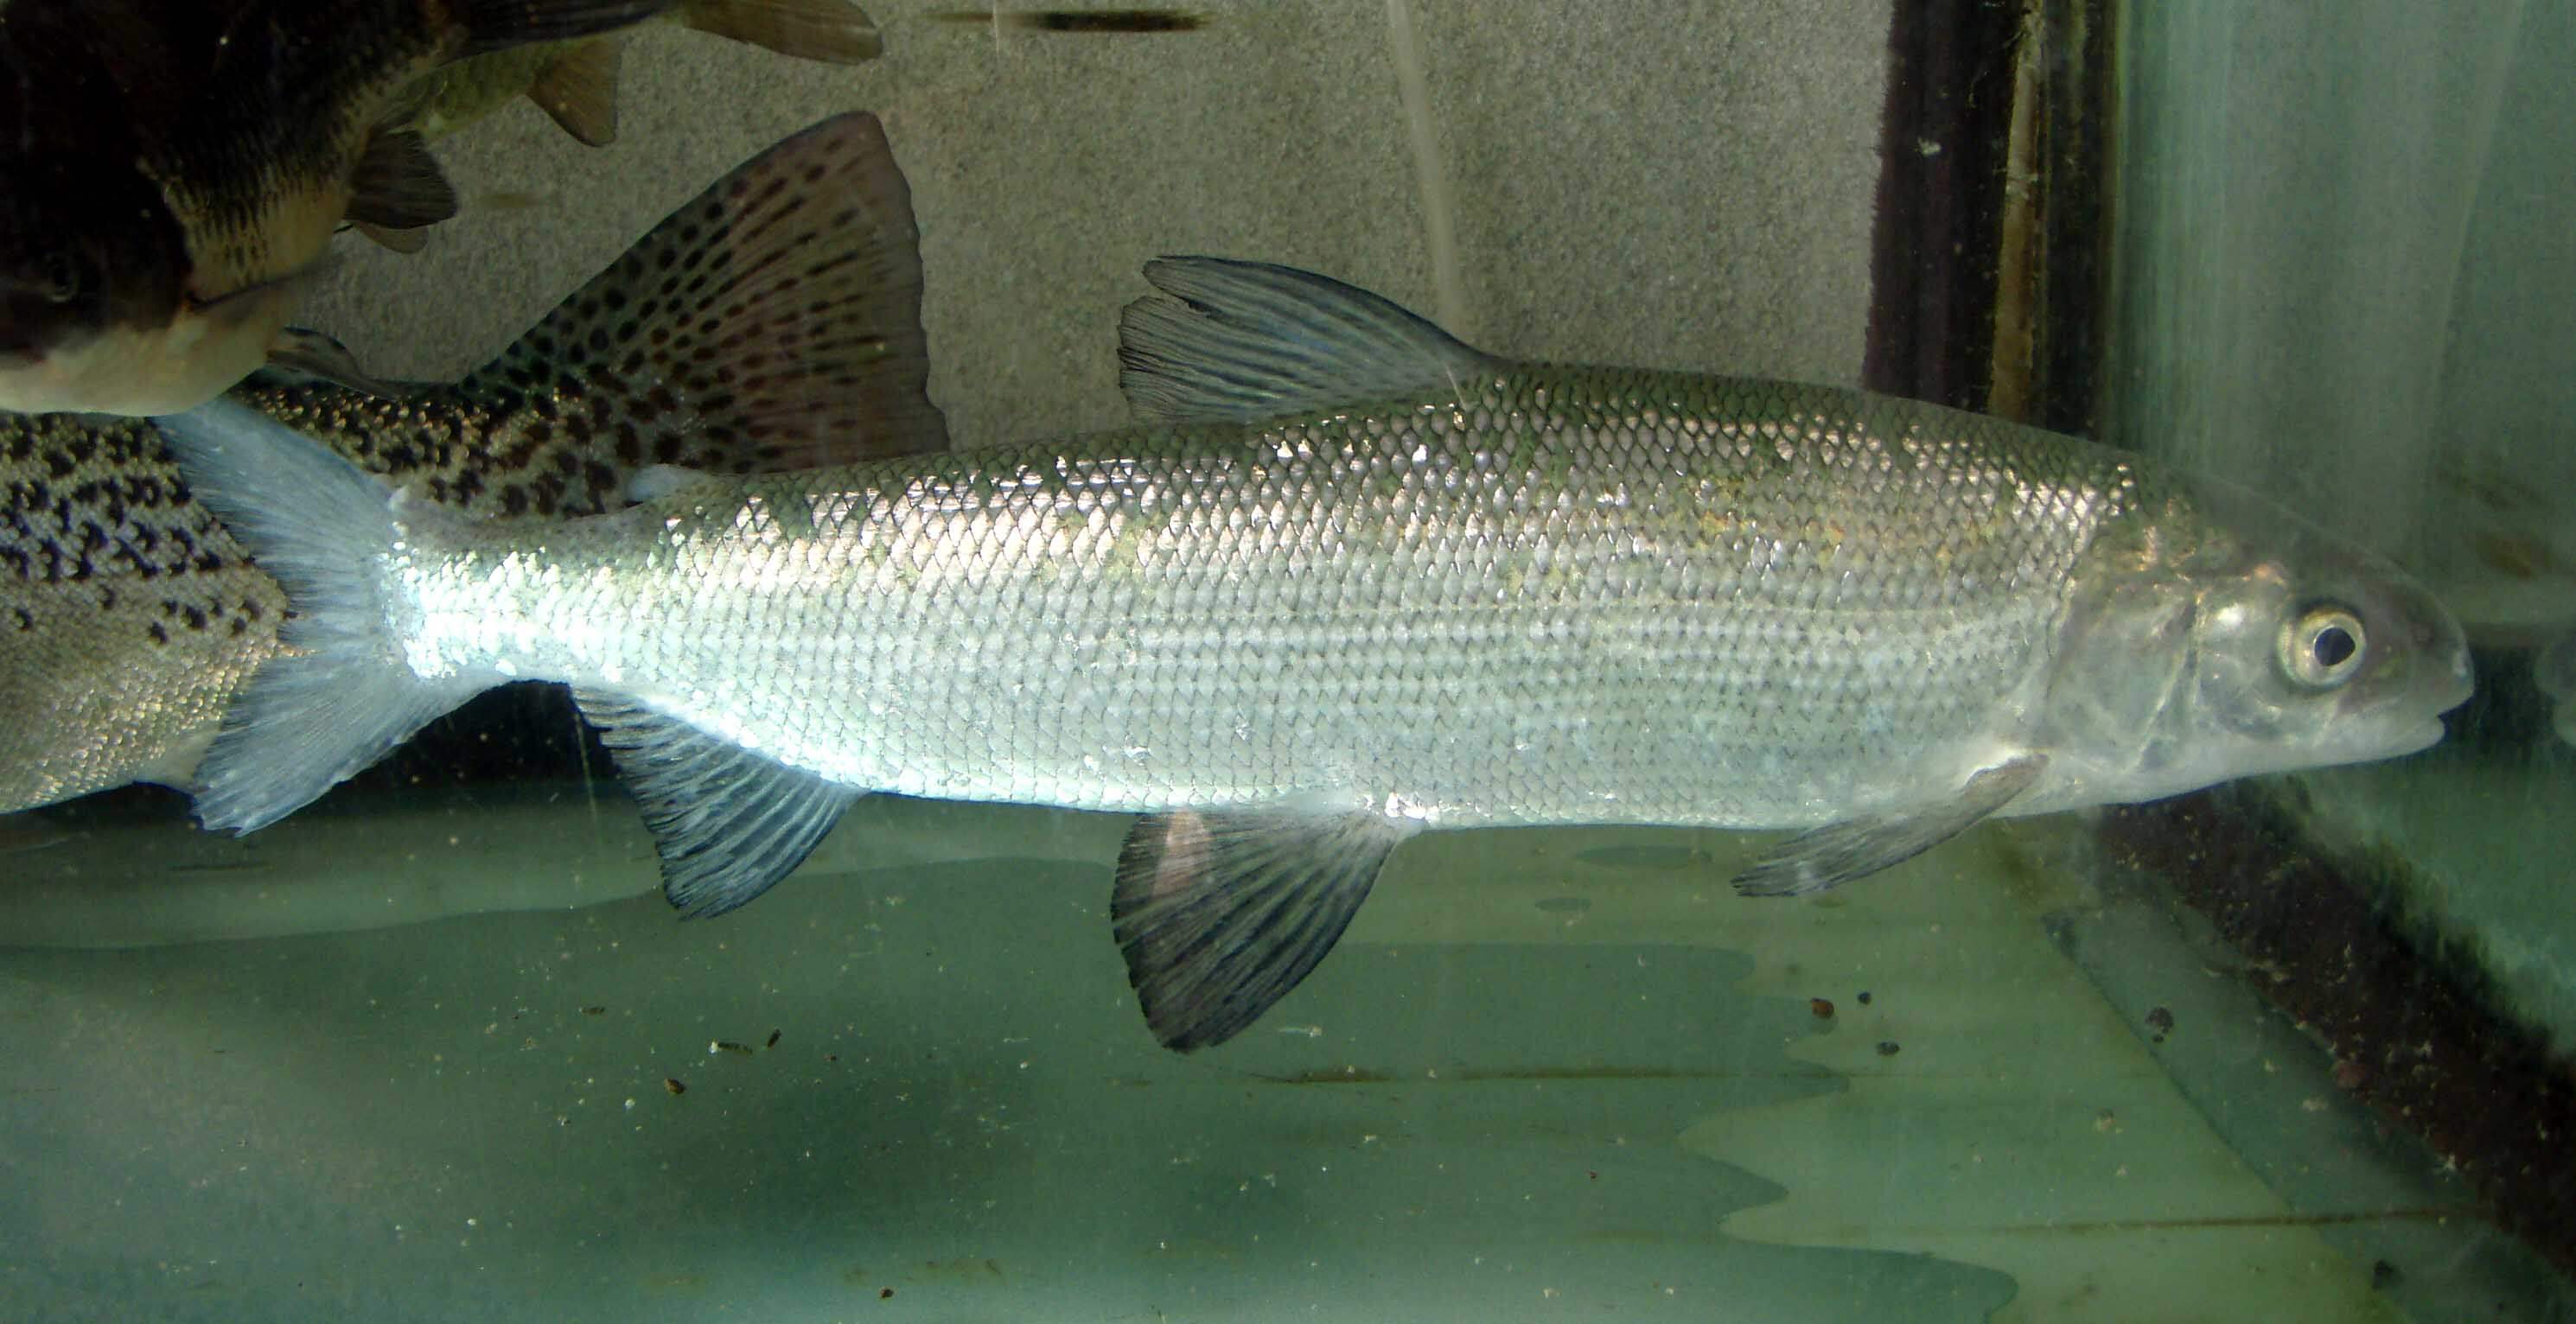 Difíciles de alcanzar los lagos de rusia se han encontrado nuevas especies de peces